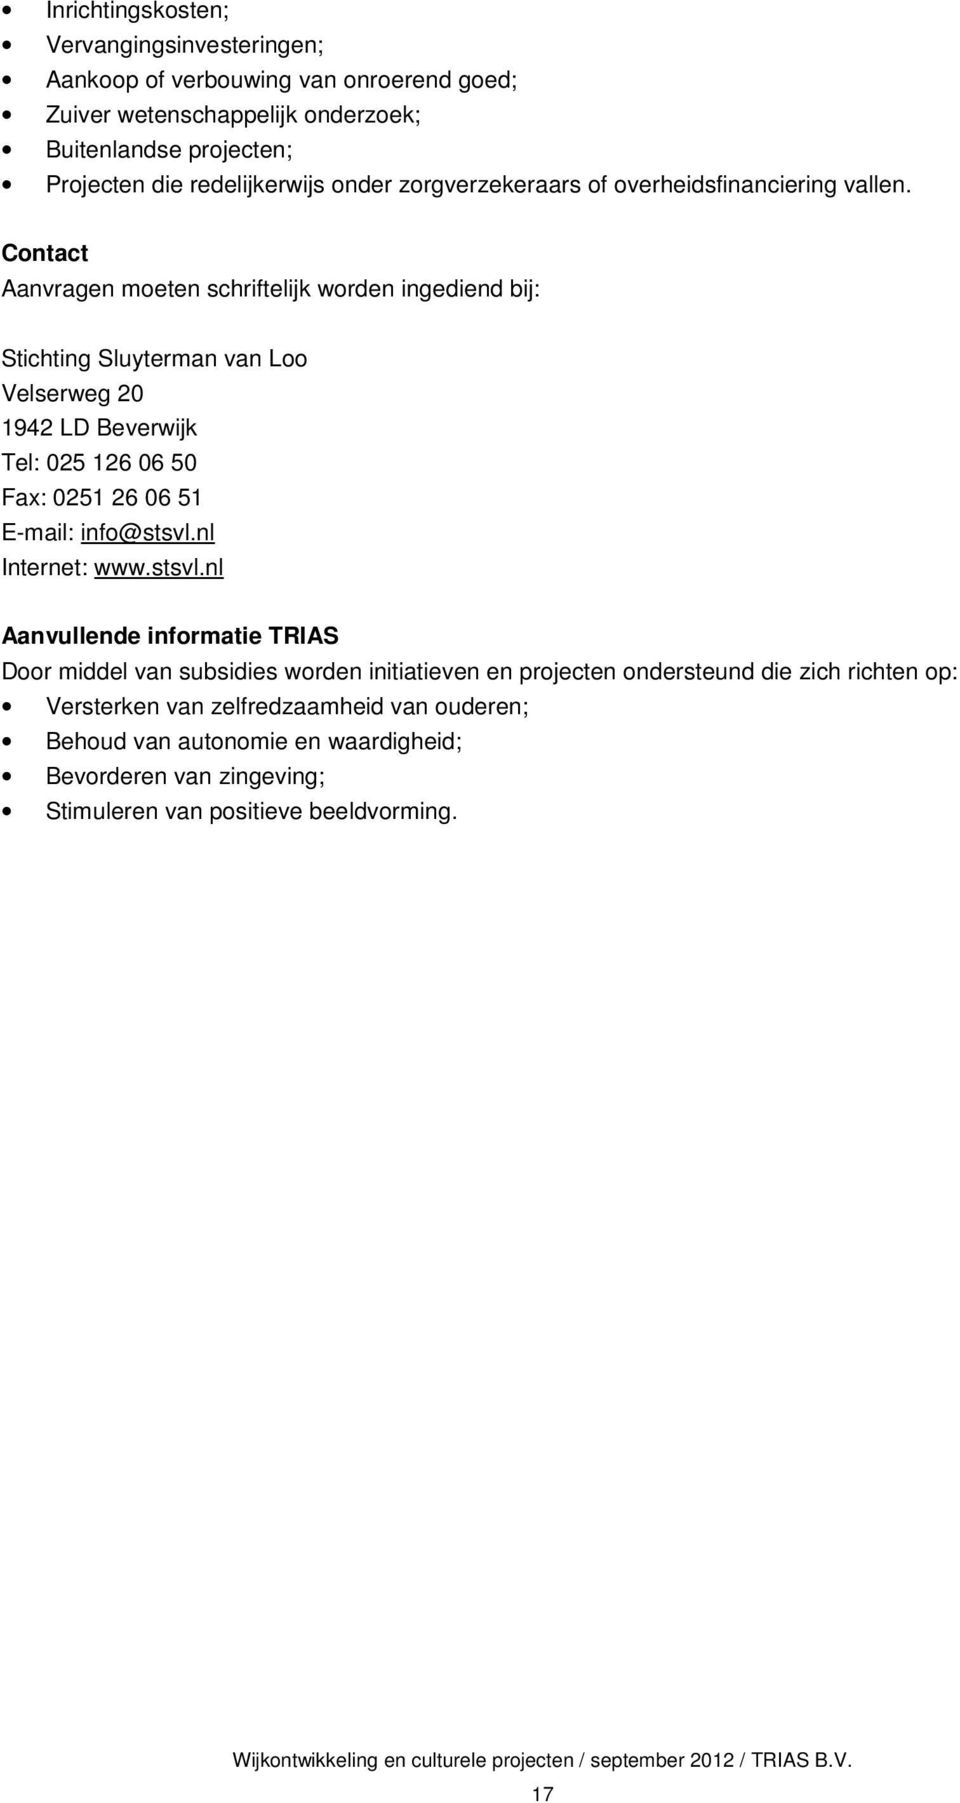 Contact Aanvragen moeten schriftelijk worden ingediend bij: Stichting Sluyterman van Loo Velserweg 20 1942 LD Beverwijk Tel: 025 126 06 50 Fax: 0251 26 06 51 E-mail: